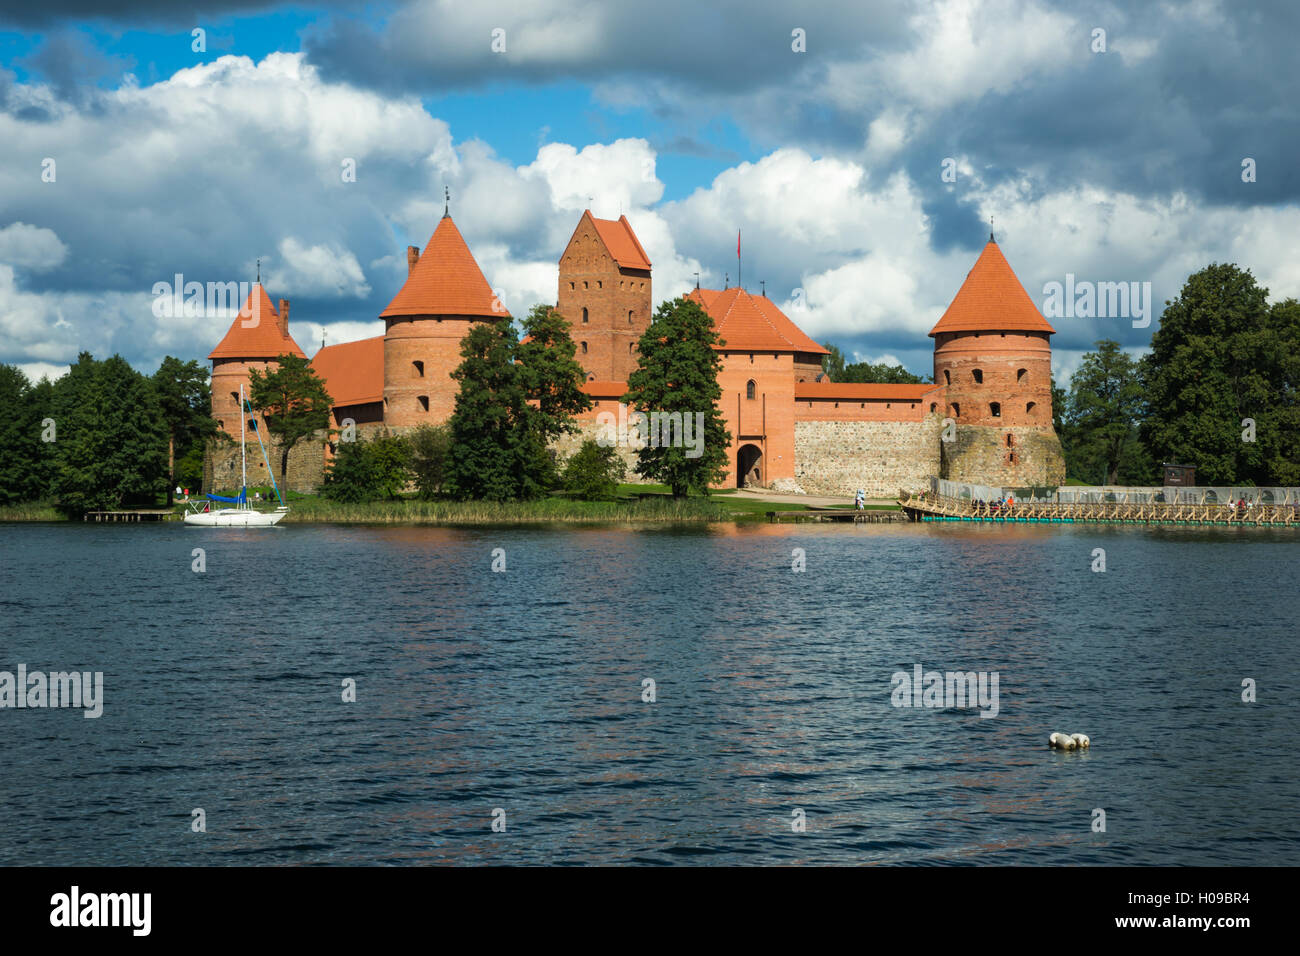 Trakai island castle on Lake Galve in Lithuania Stock Photo